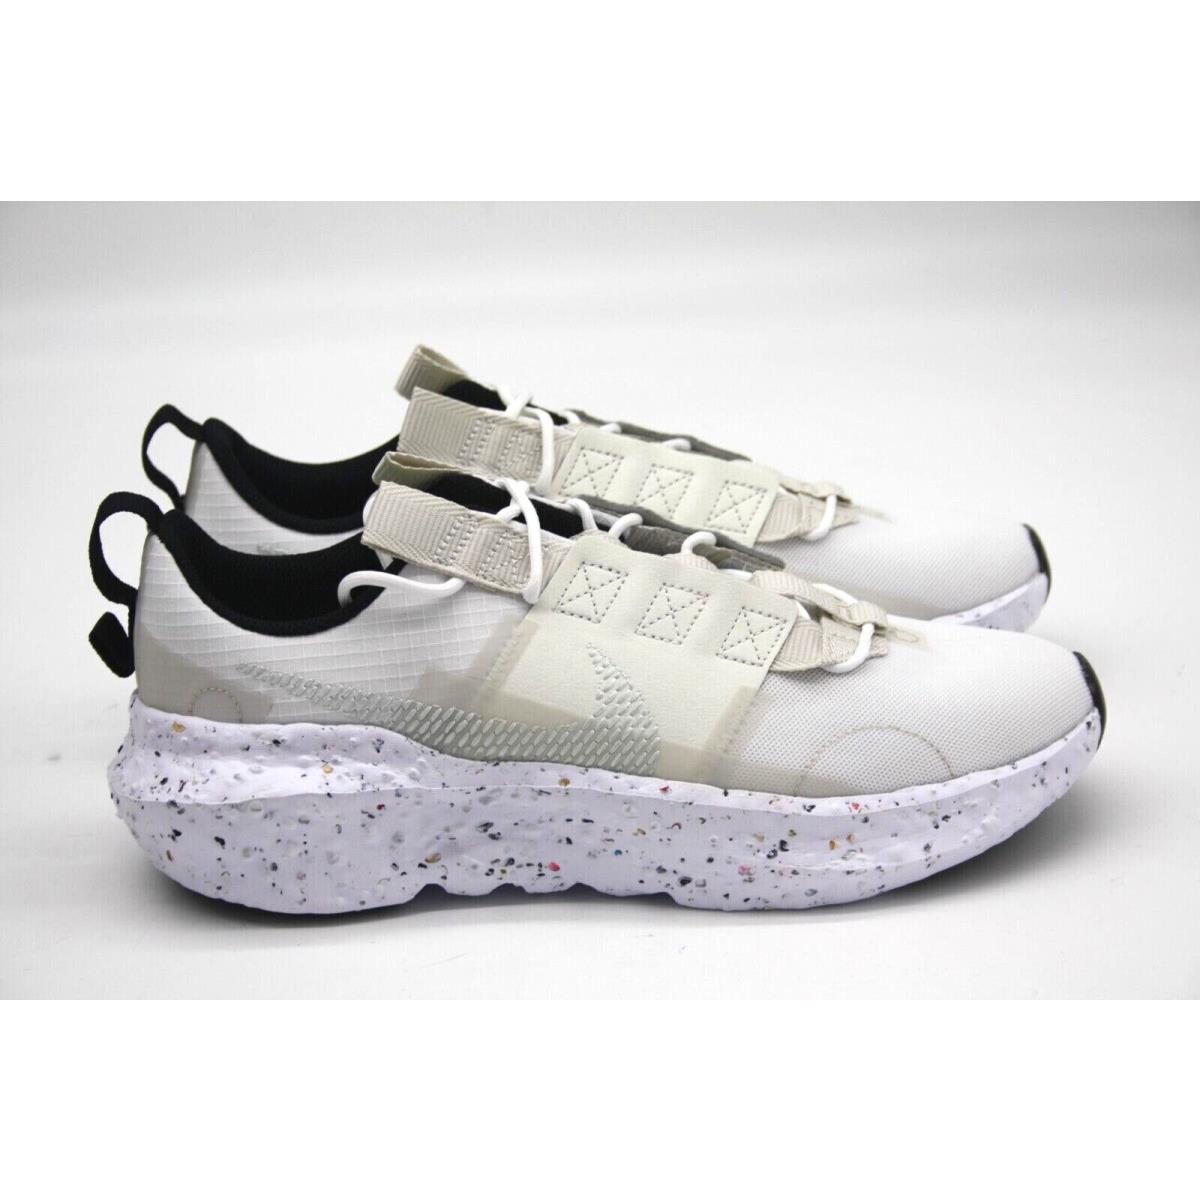 Nike shoes Crater Impact - WHITE/LIGHT BONE-SAIL-VOLT 5